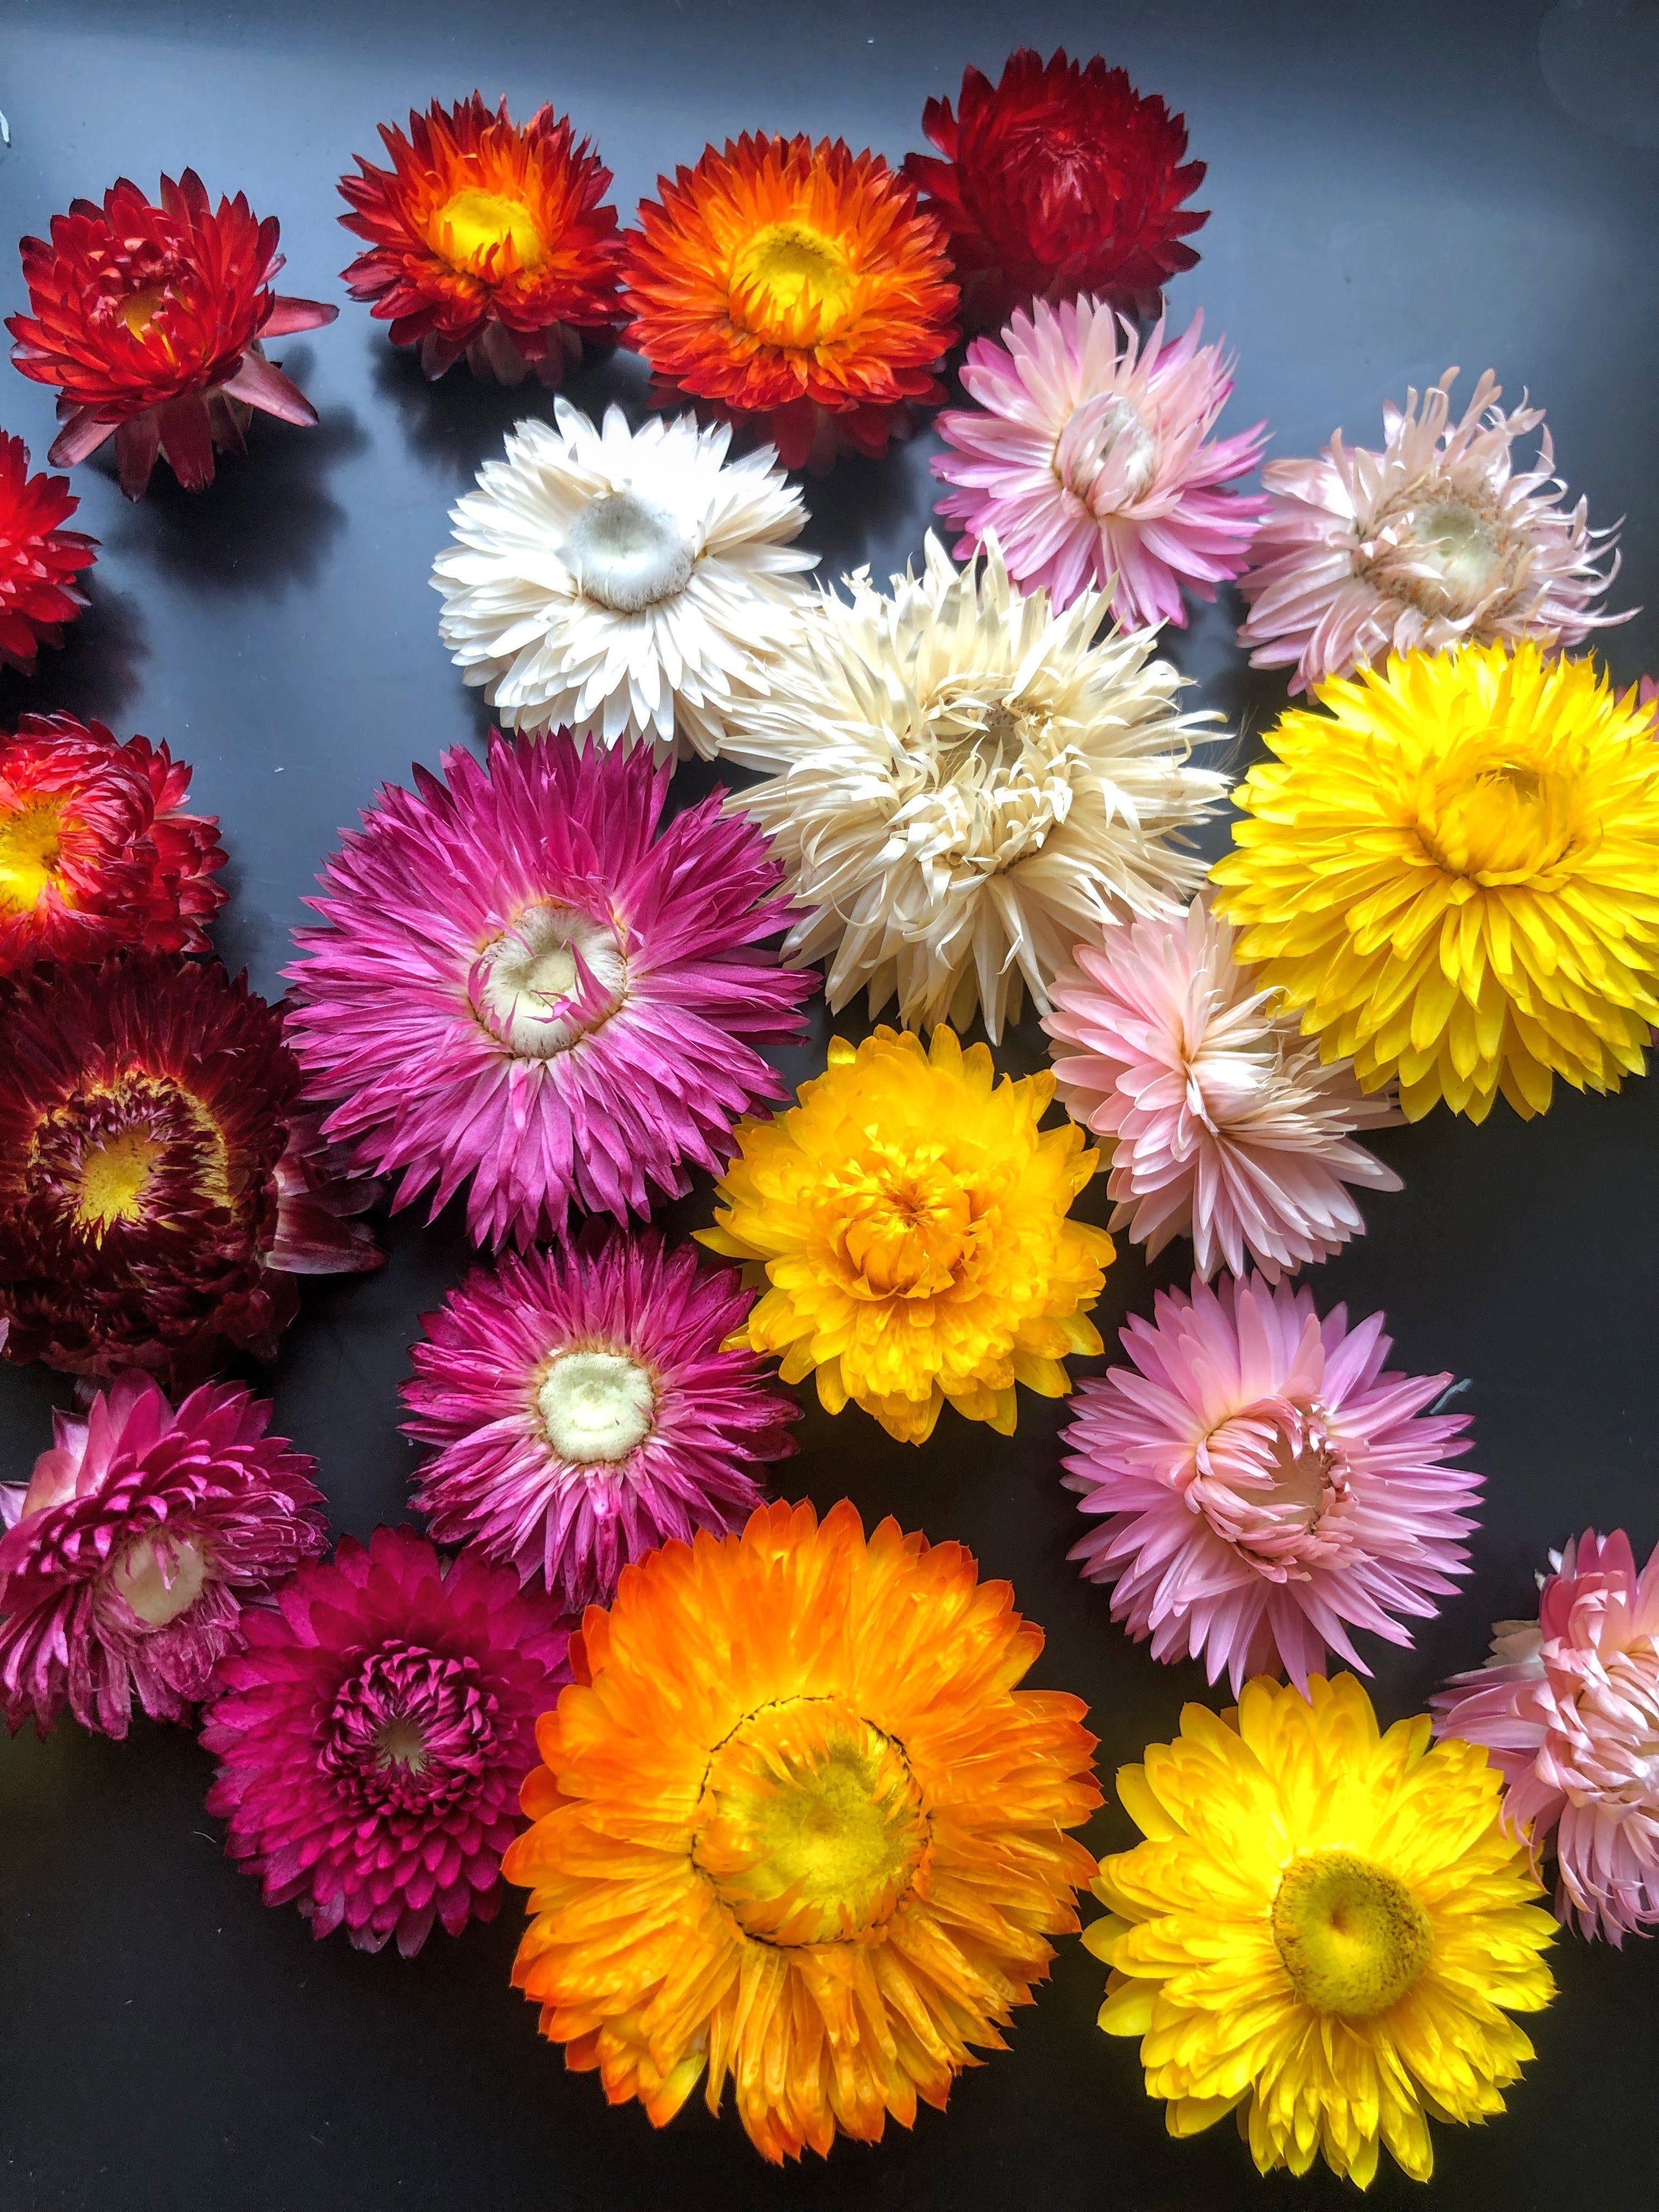 Trockenblume Strohblumenköpfe Helichrysum oder getrocknet: gemischt sortiert - farblich Kunstharz.Art Rosa